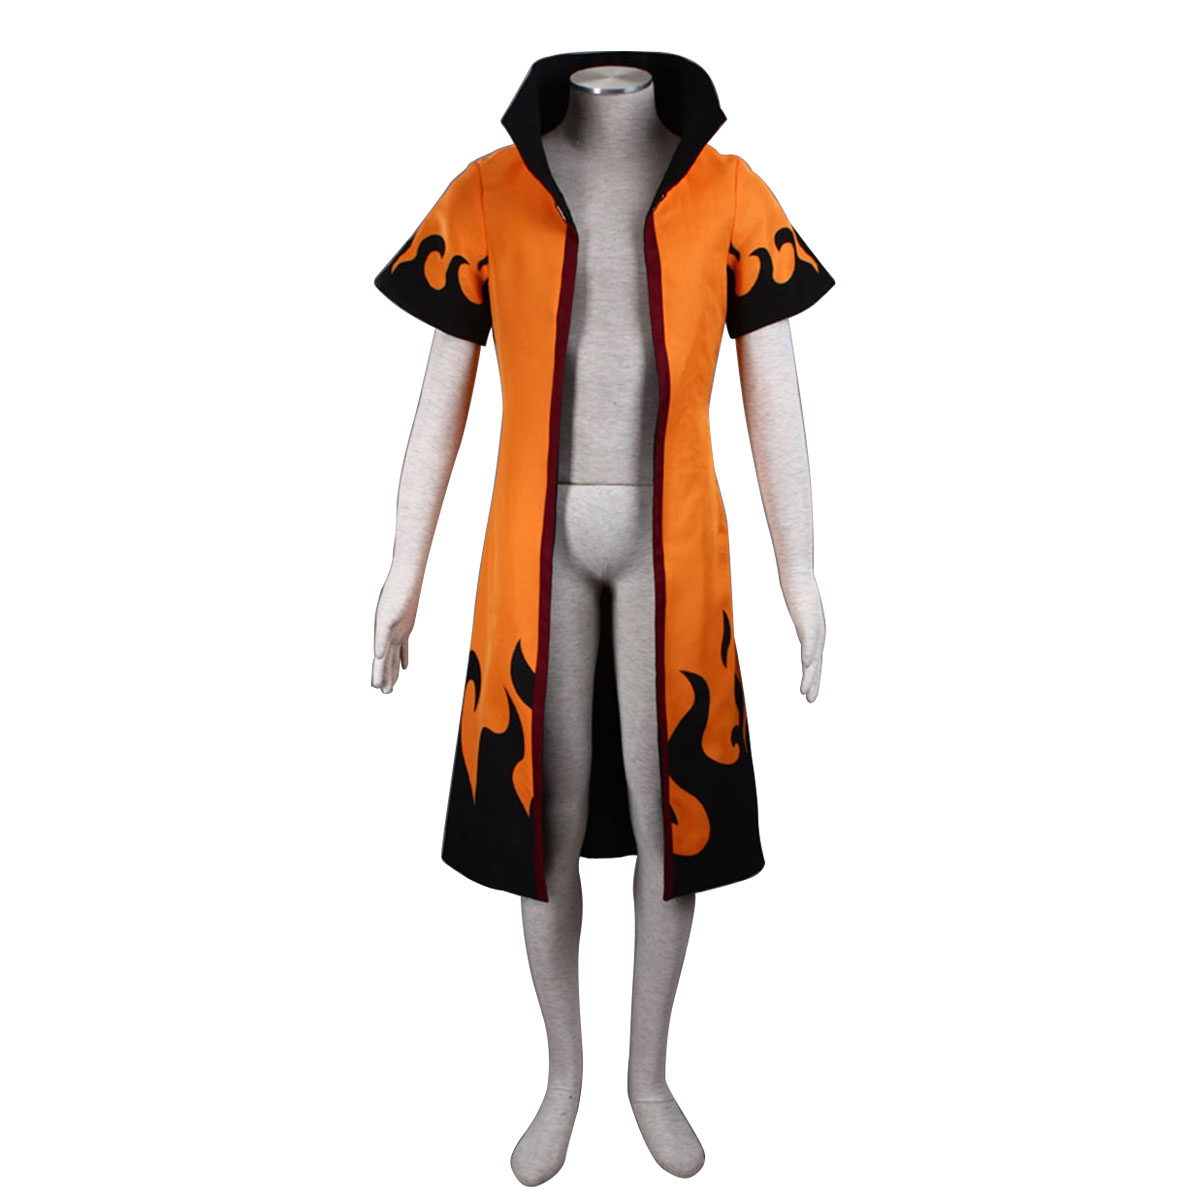 Naruto Sixth Hokage Naruto Uzumaki 4 Anime Cosplay Costumes Outfit